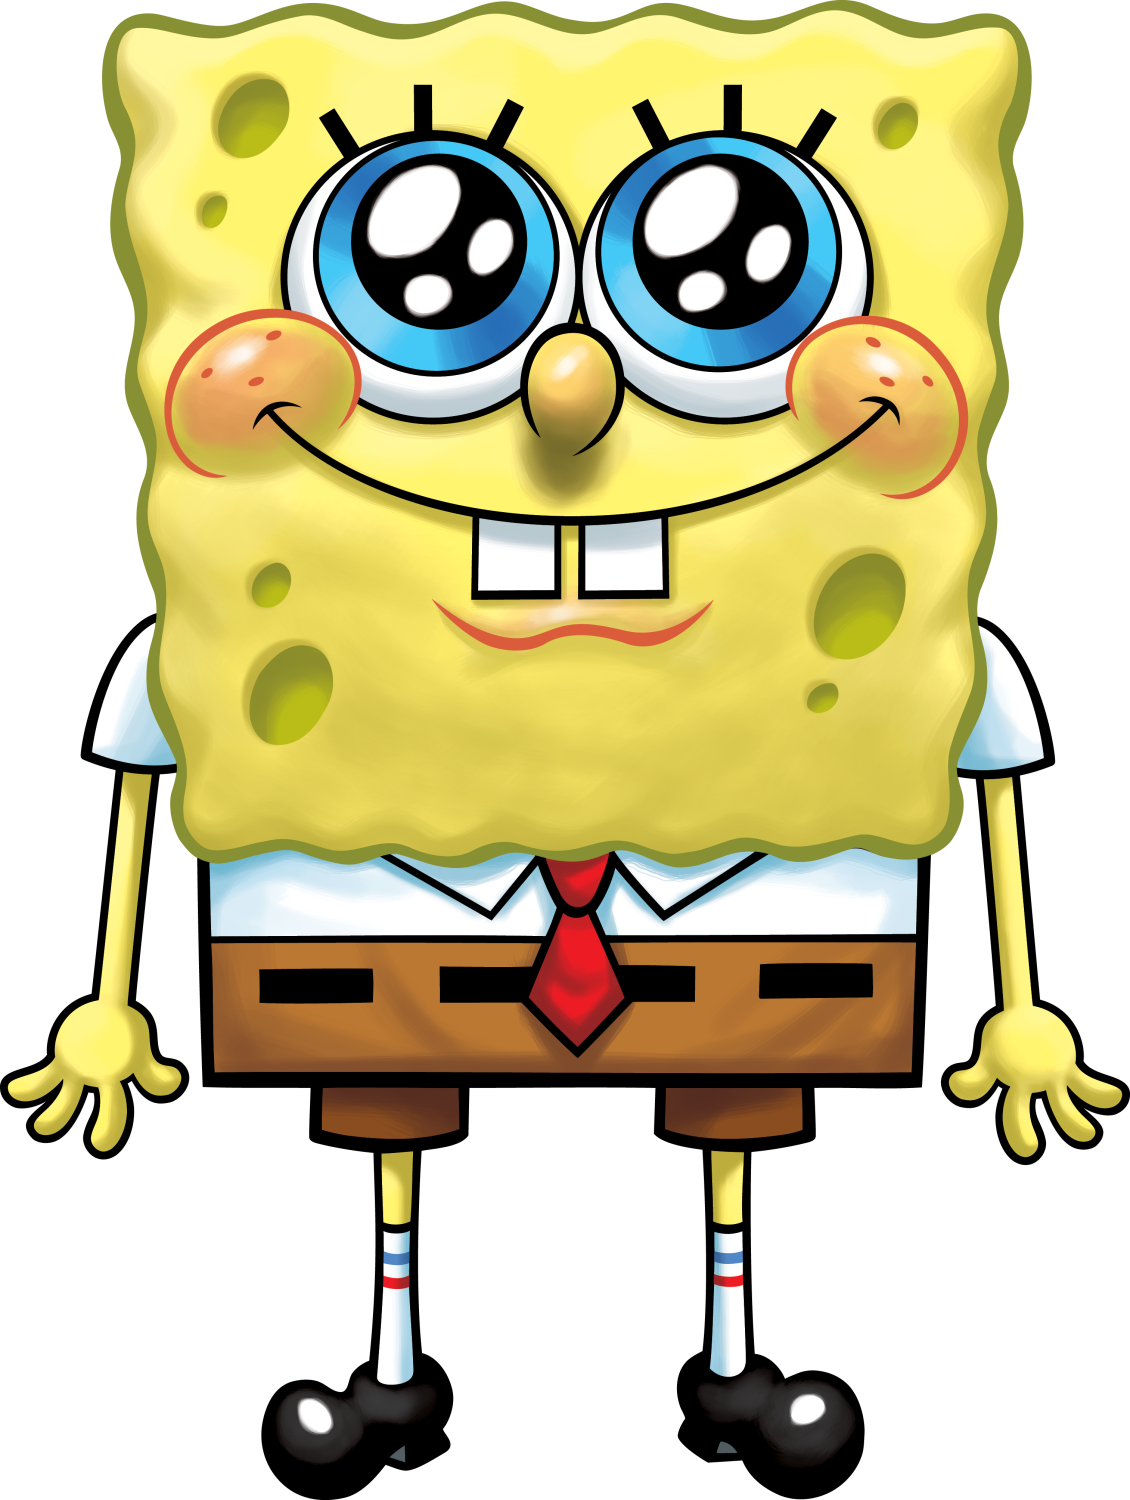 SpongeBob_SquarePants.png